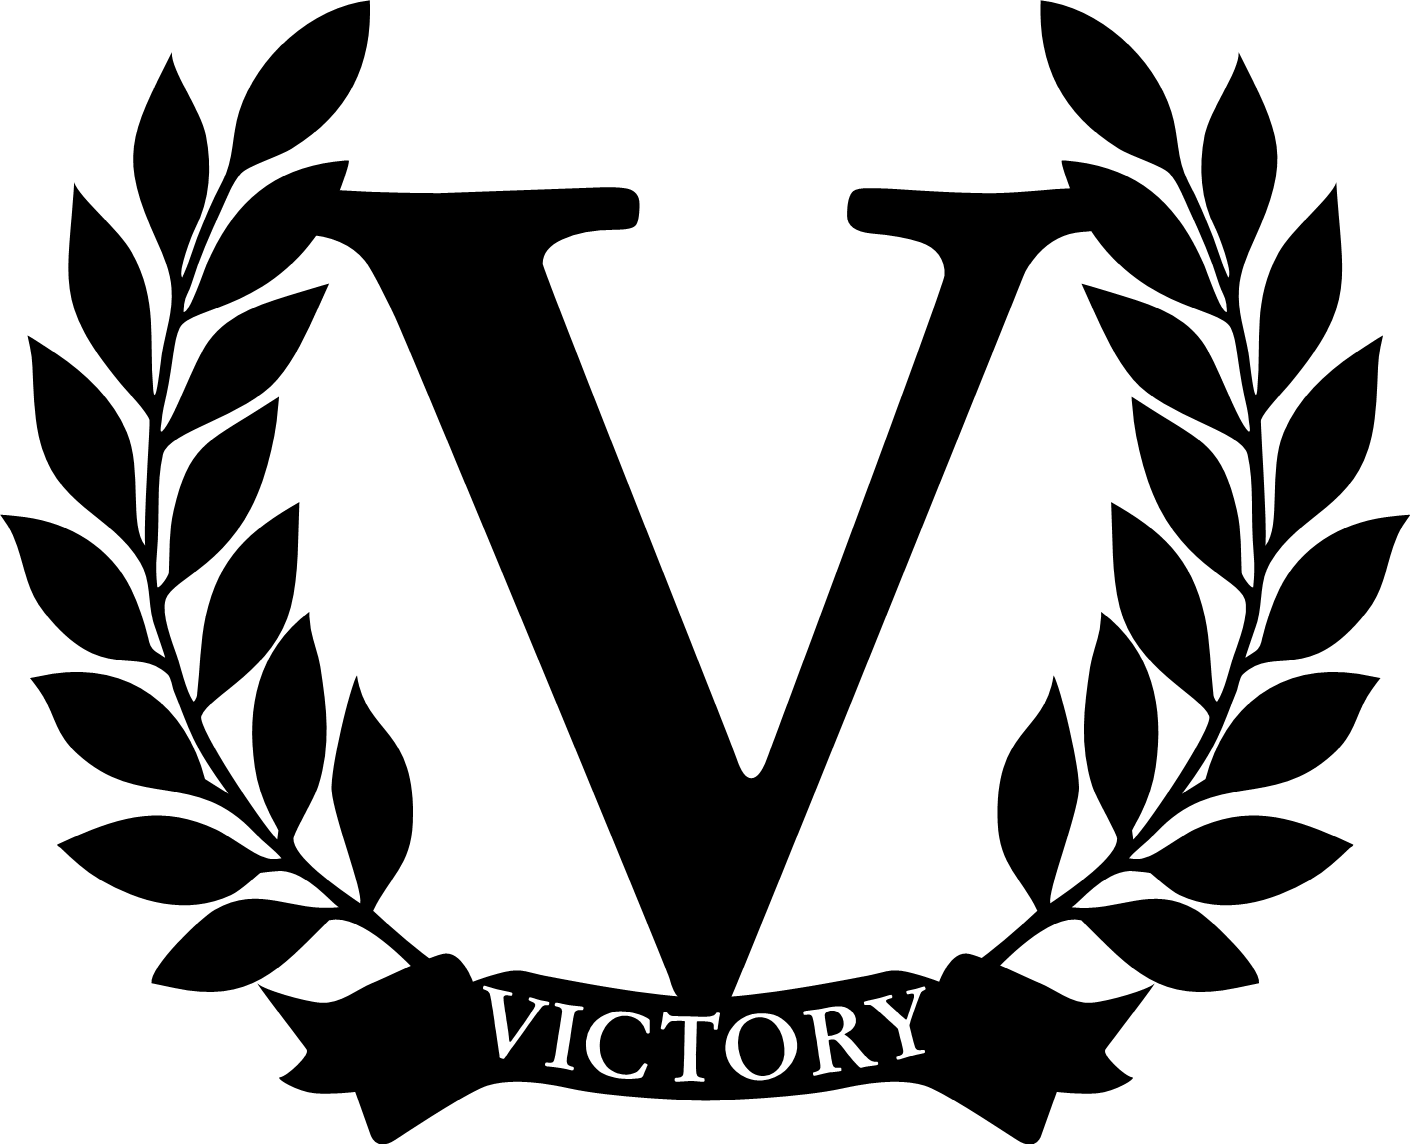 Victory amplification logo UK Service